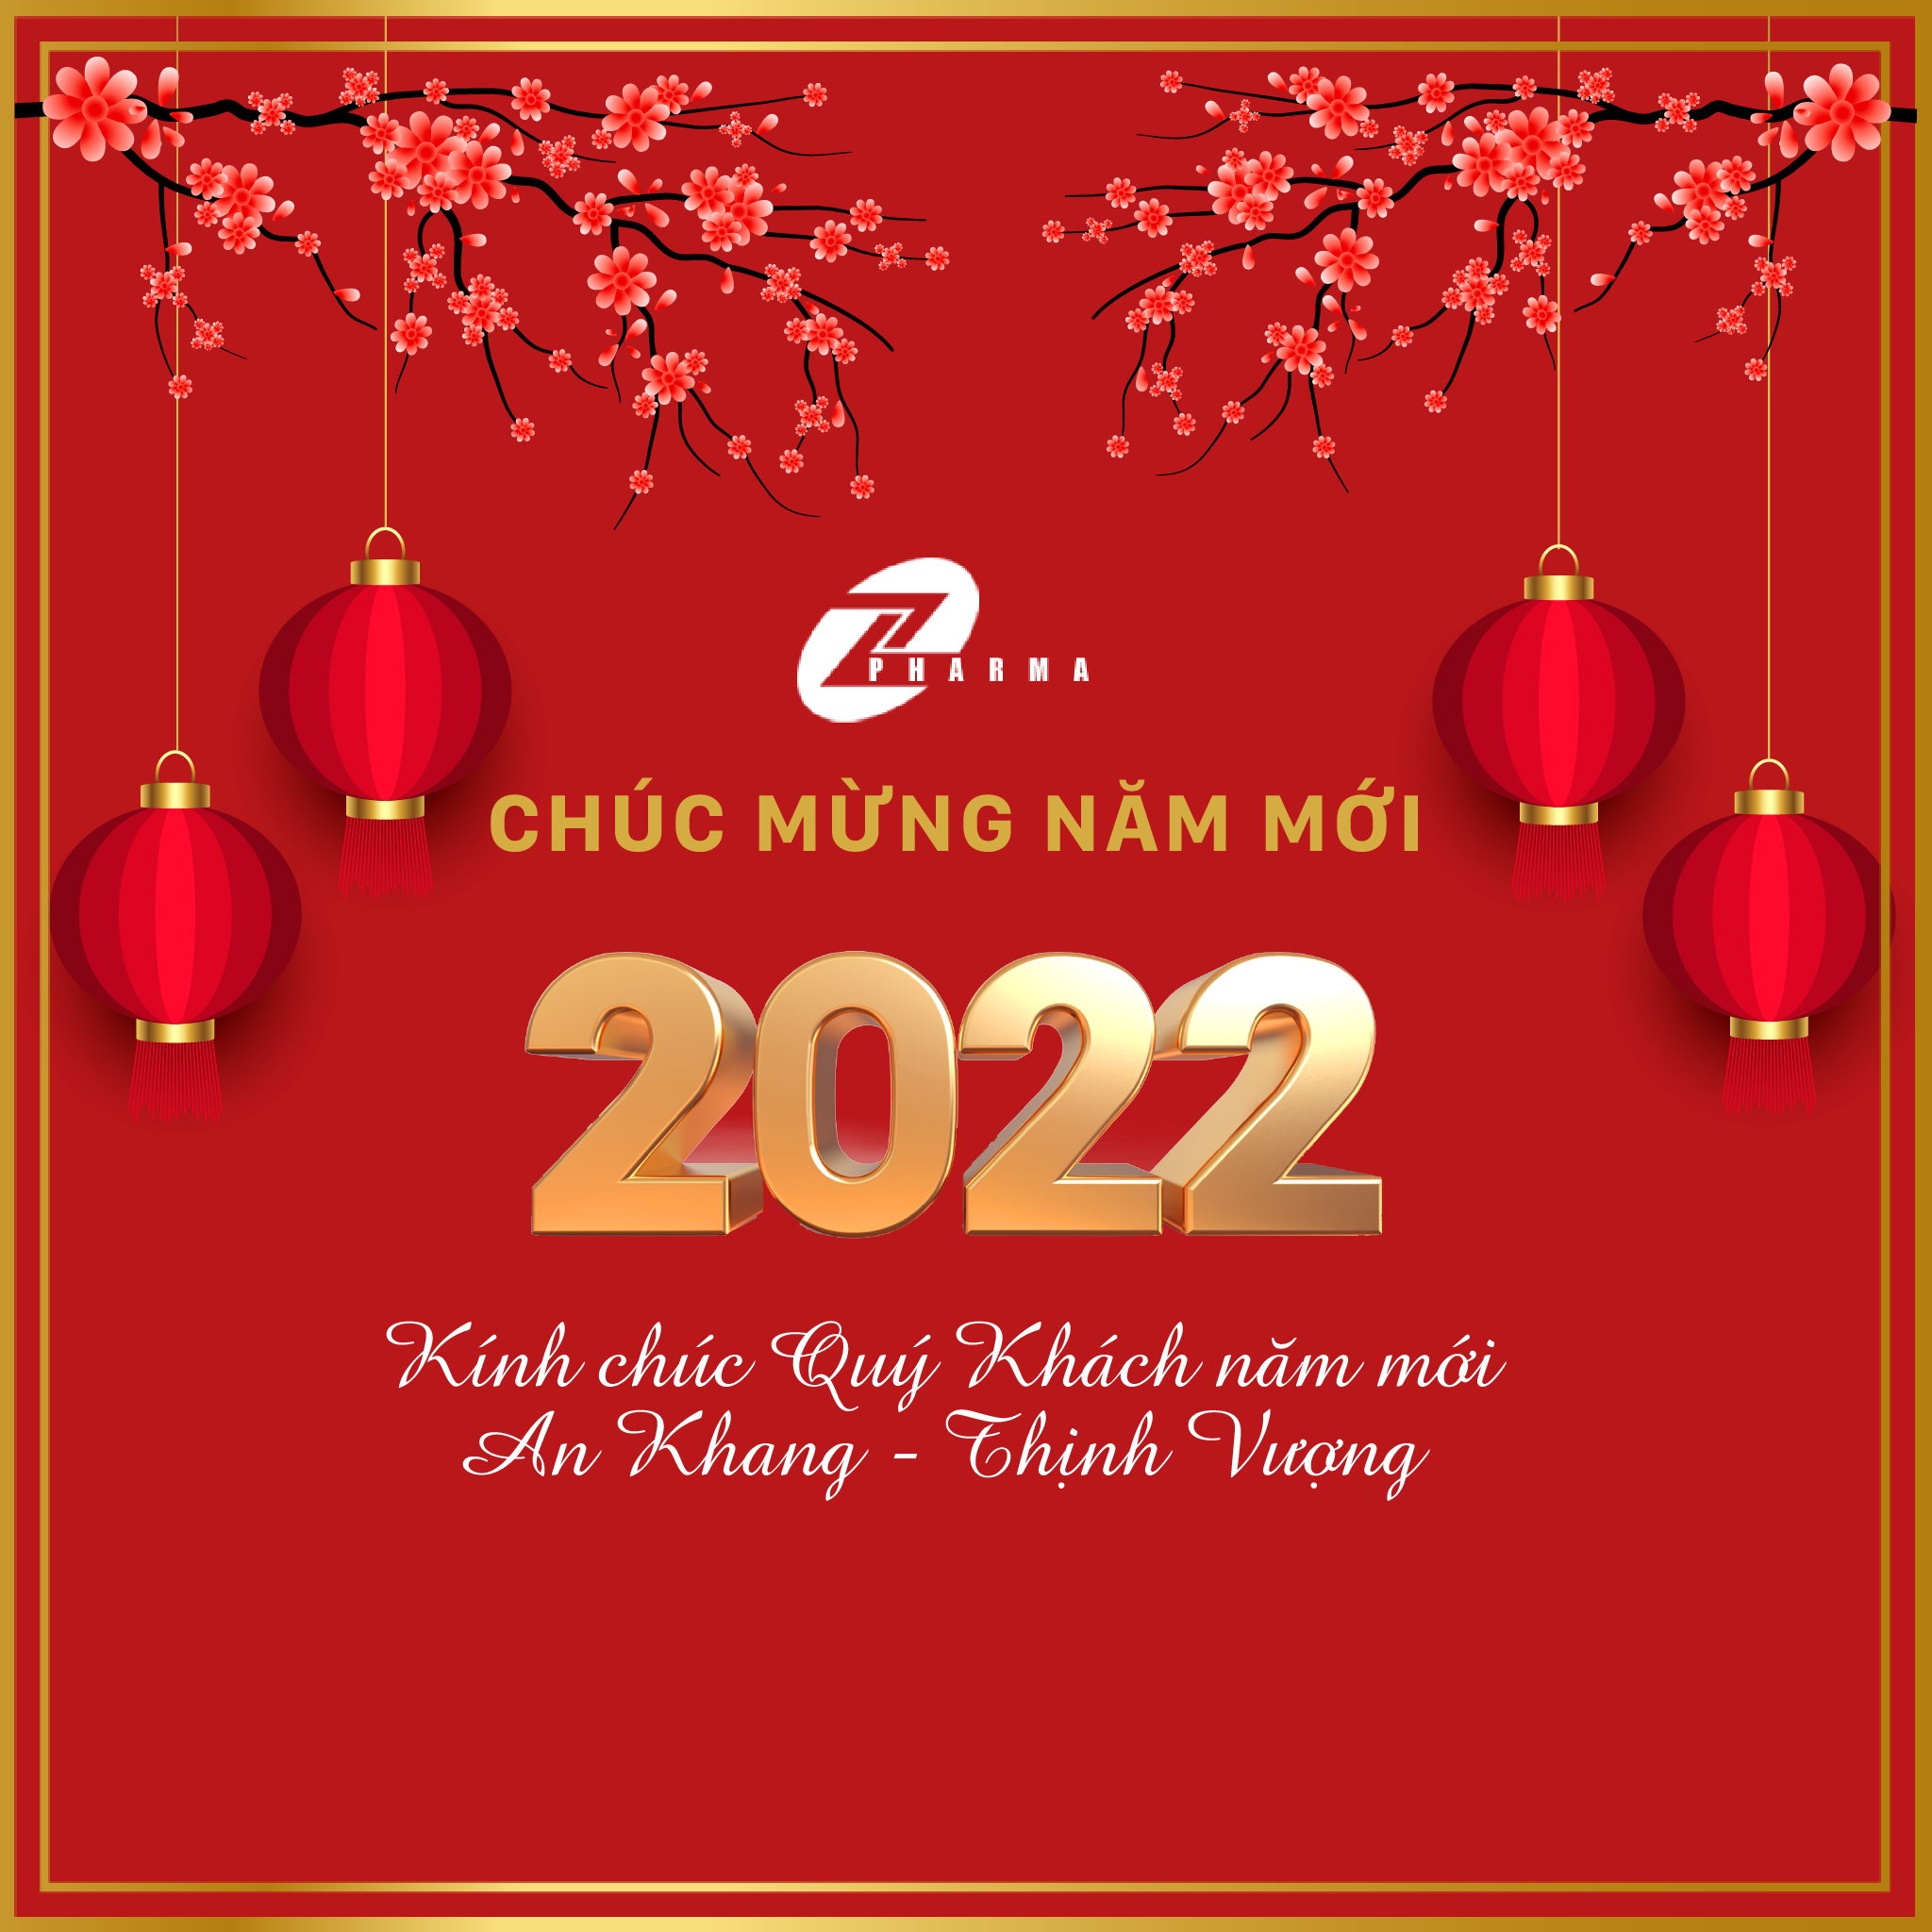 Công ty Cổ phần Dược phẩm Tùng Linh Chúc mừng năm mới 2022